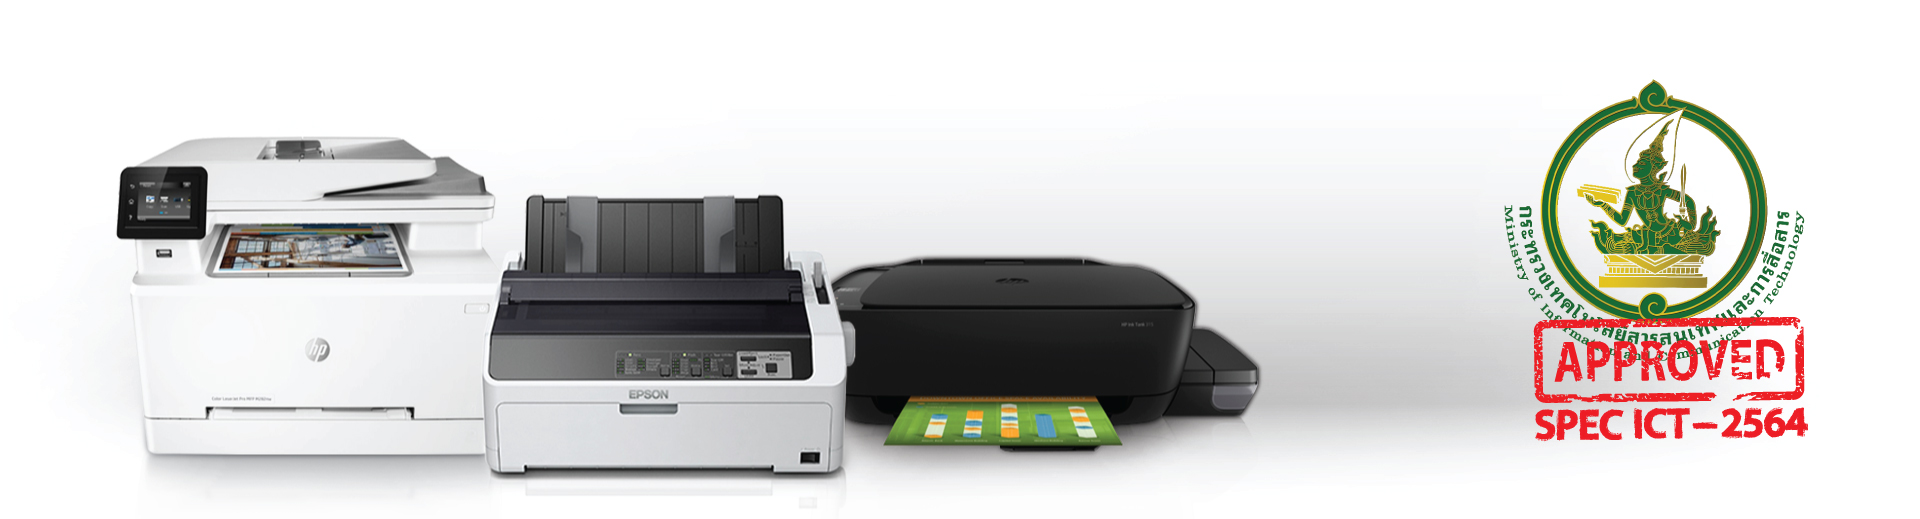 เครื่องพิมพ์แบบฉีดหมึกพร้อมติดตั้งถังหมึกพิมพ์ (Ink Tank Printer) ราคา 4,300 บาท